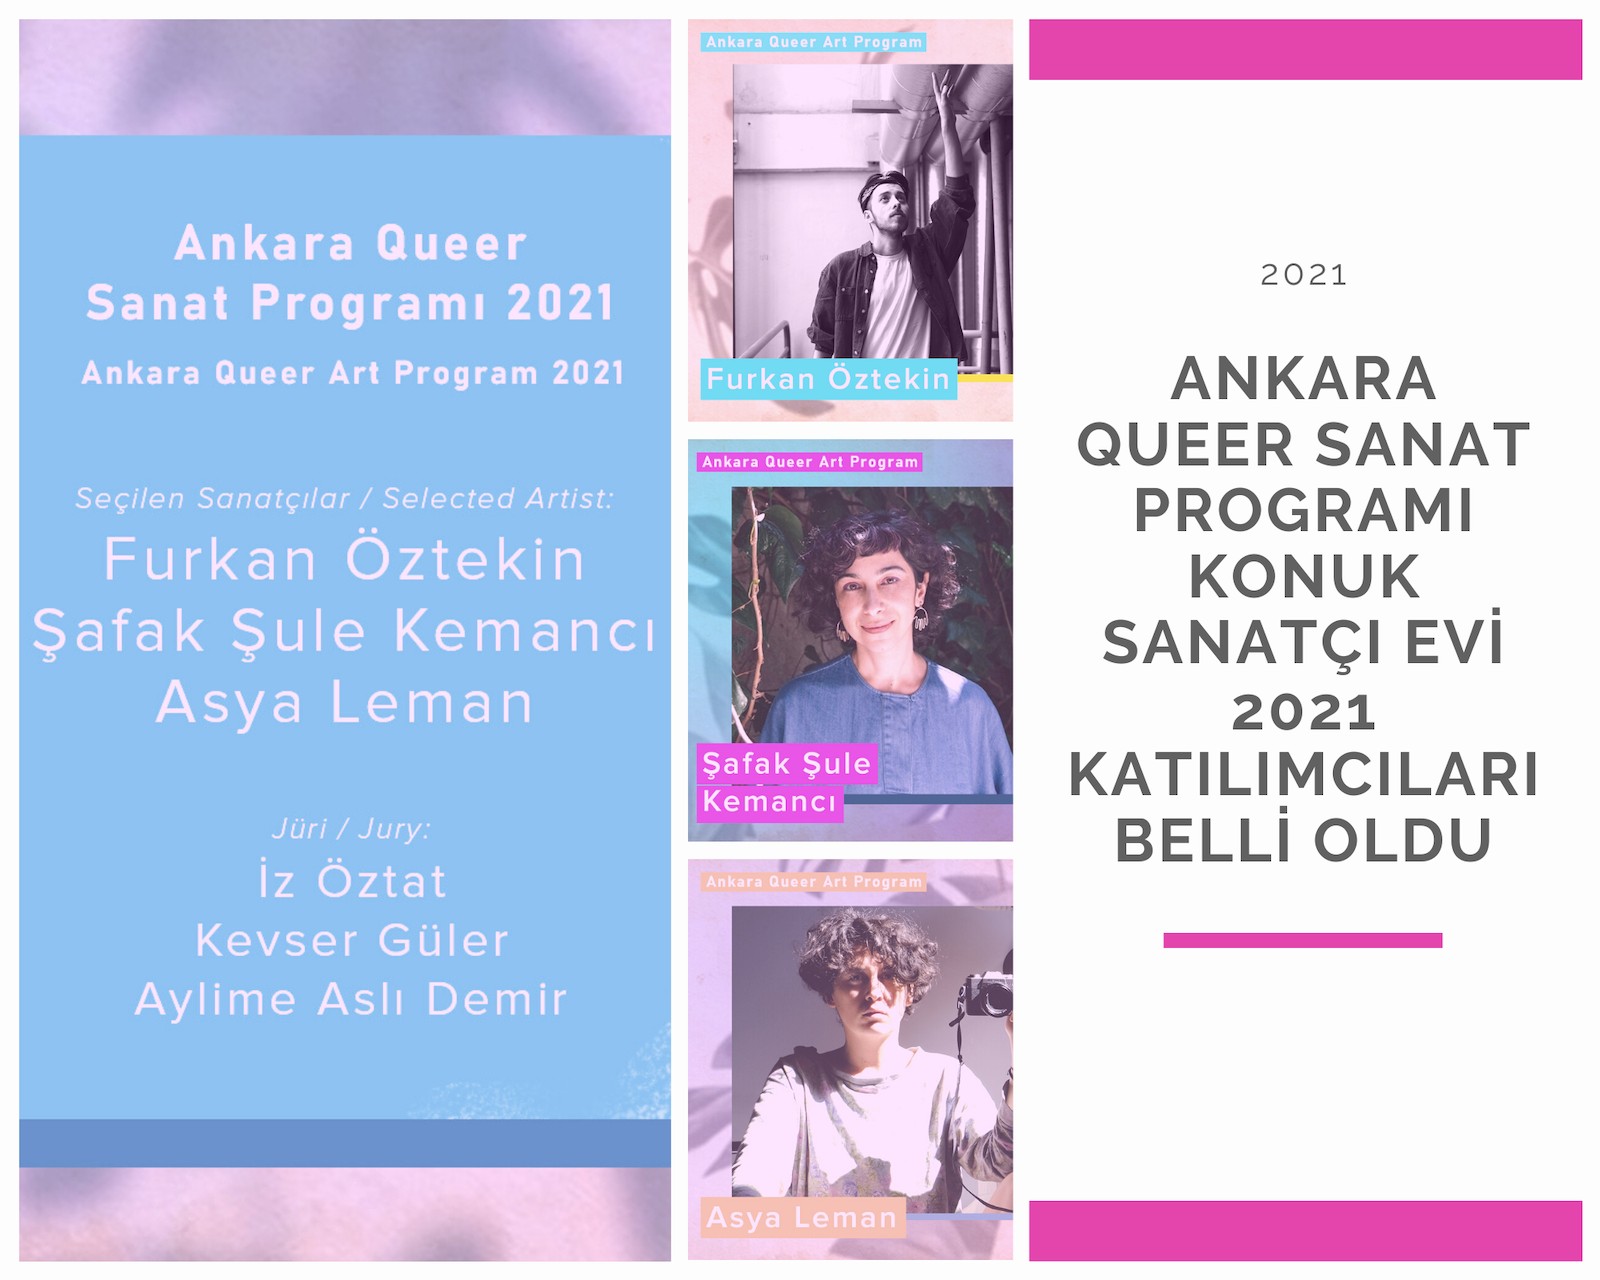 Ankara Queer Sanat Programı Konuk Sanatçı Evi 2021 katılımcıları belli oldu | Kaos GL - LGBTİ+ Haber Portalı